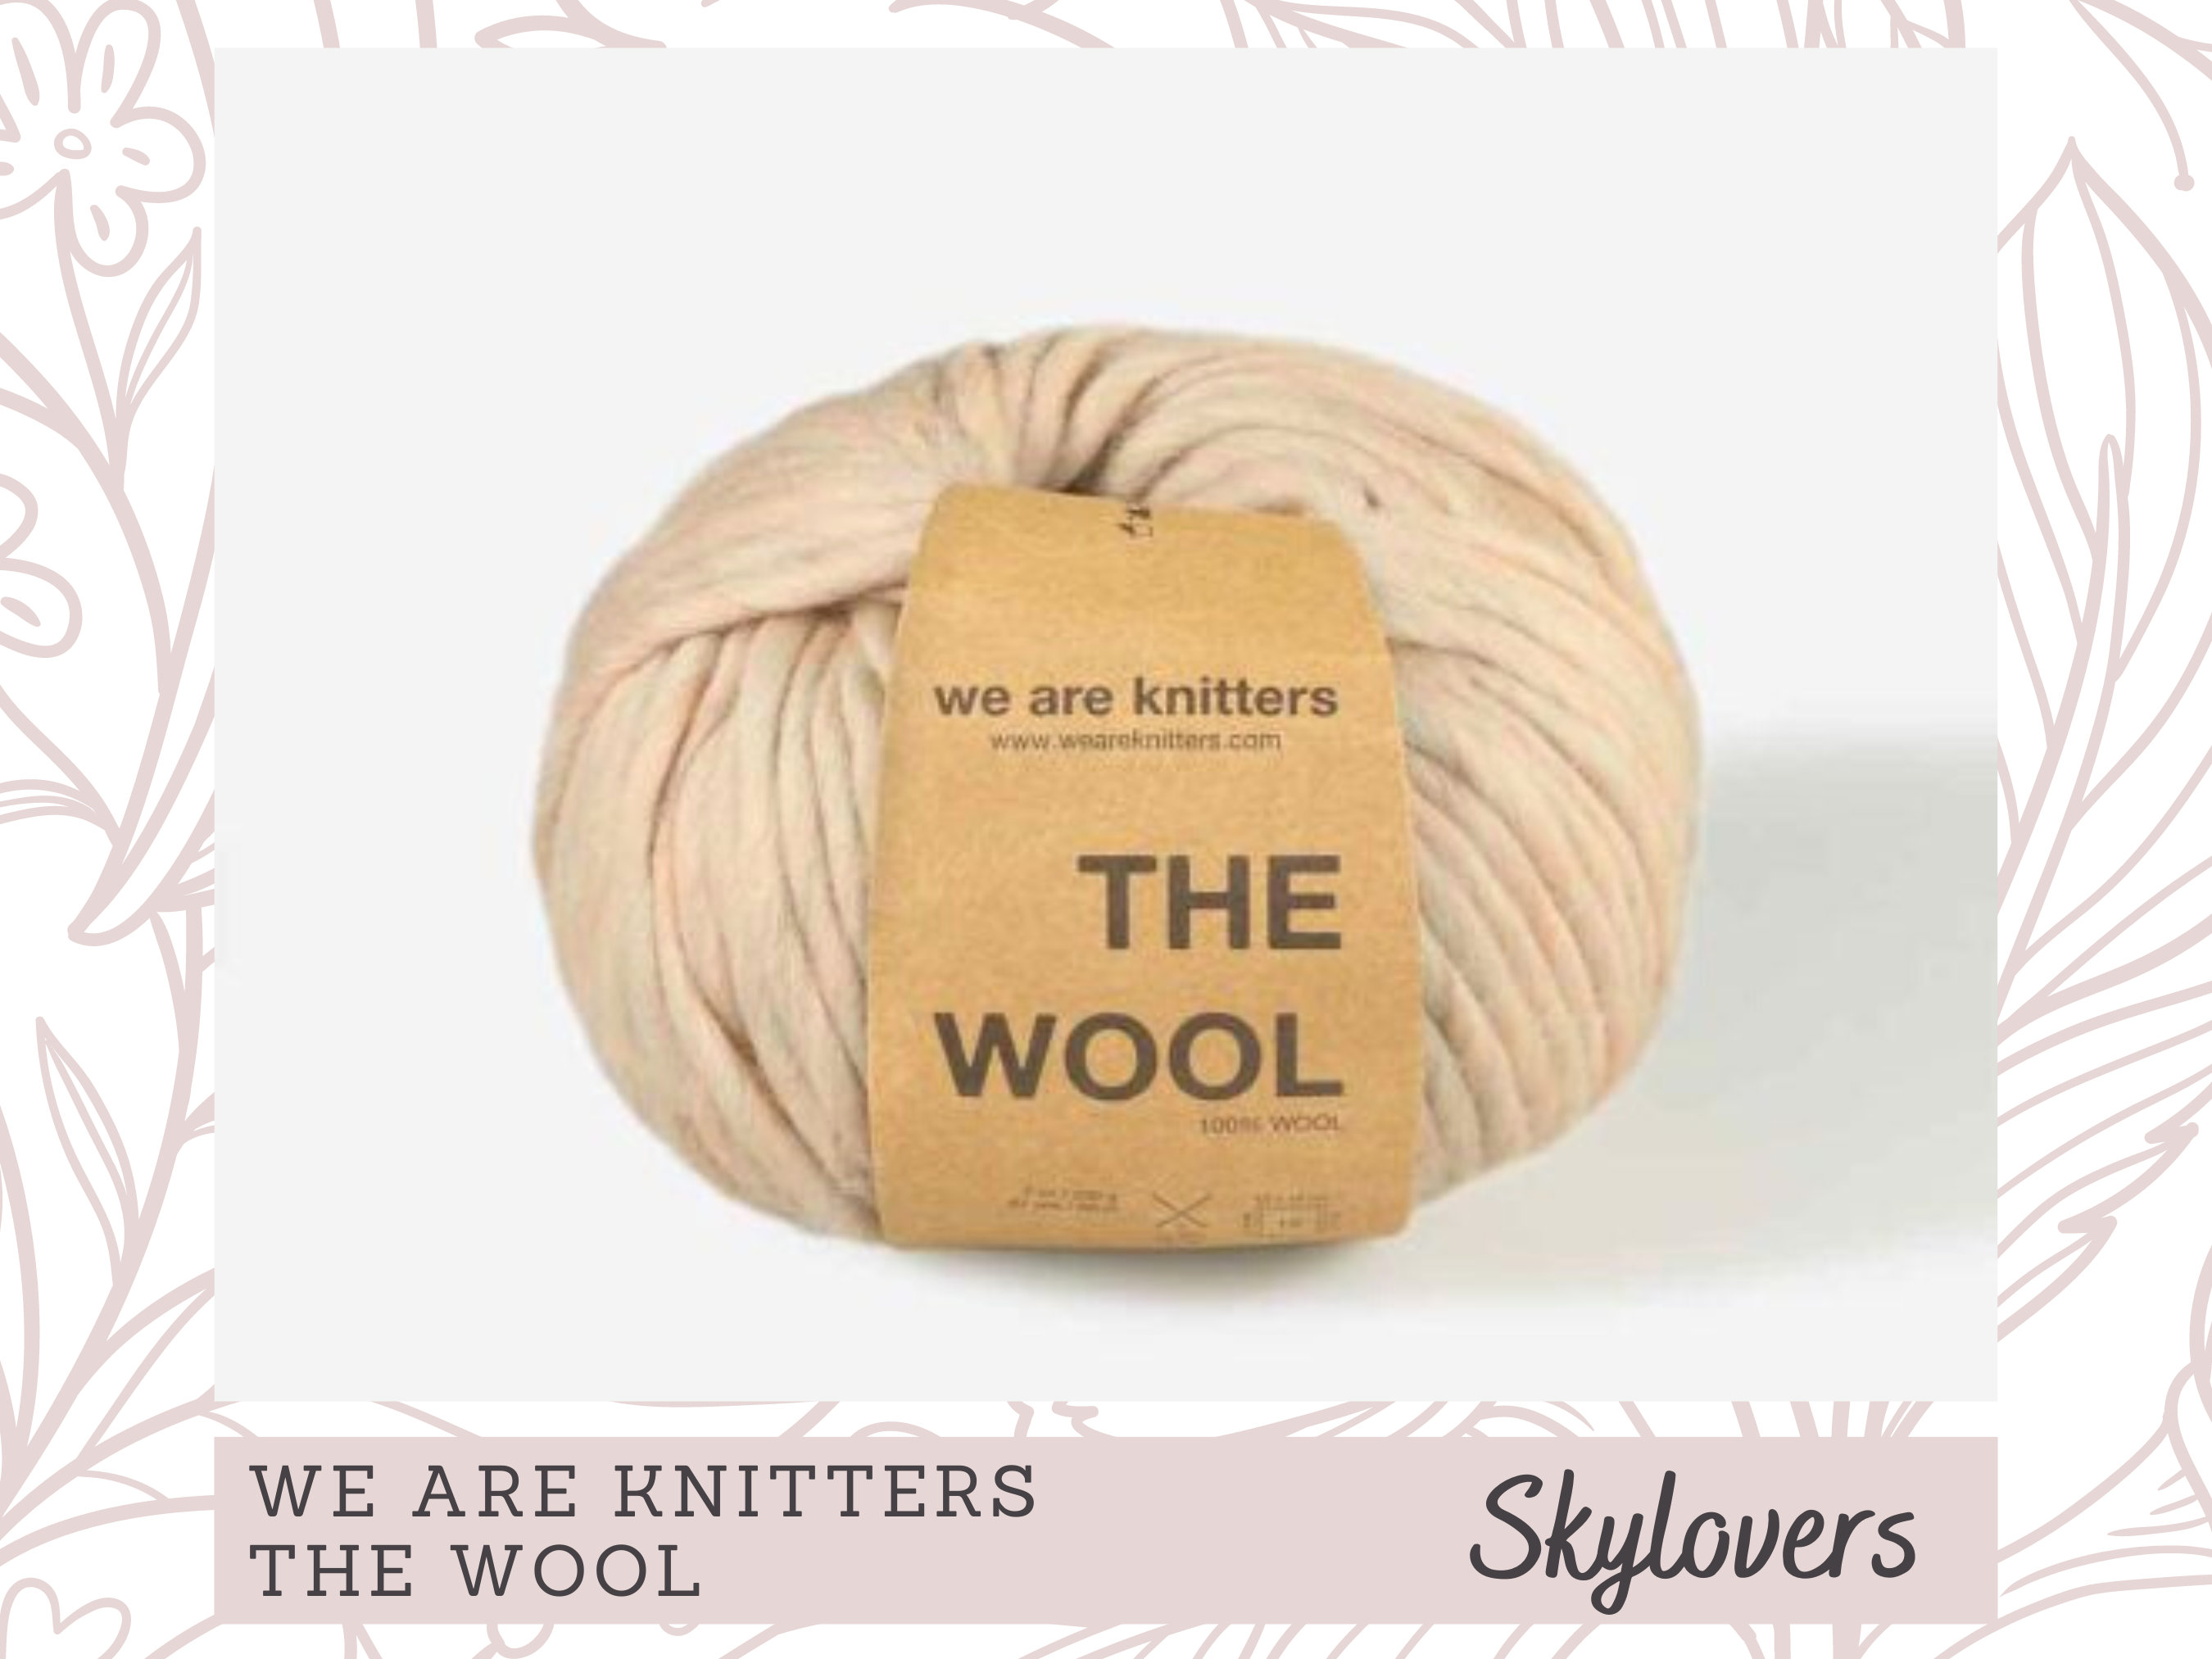 12mm Bamboo Knitting Needles for Super Bulky Yarn, Wooden Knitting Needles  Gift for Knitter Knit Needle 17 